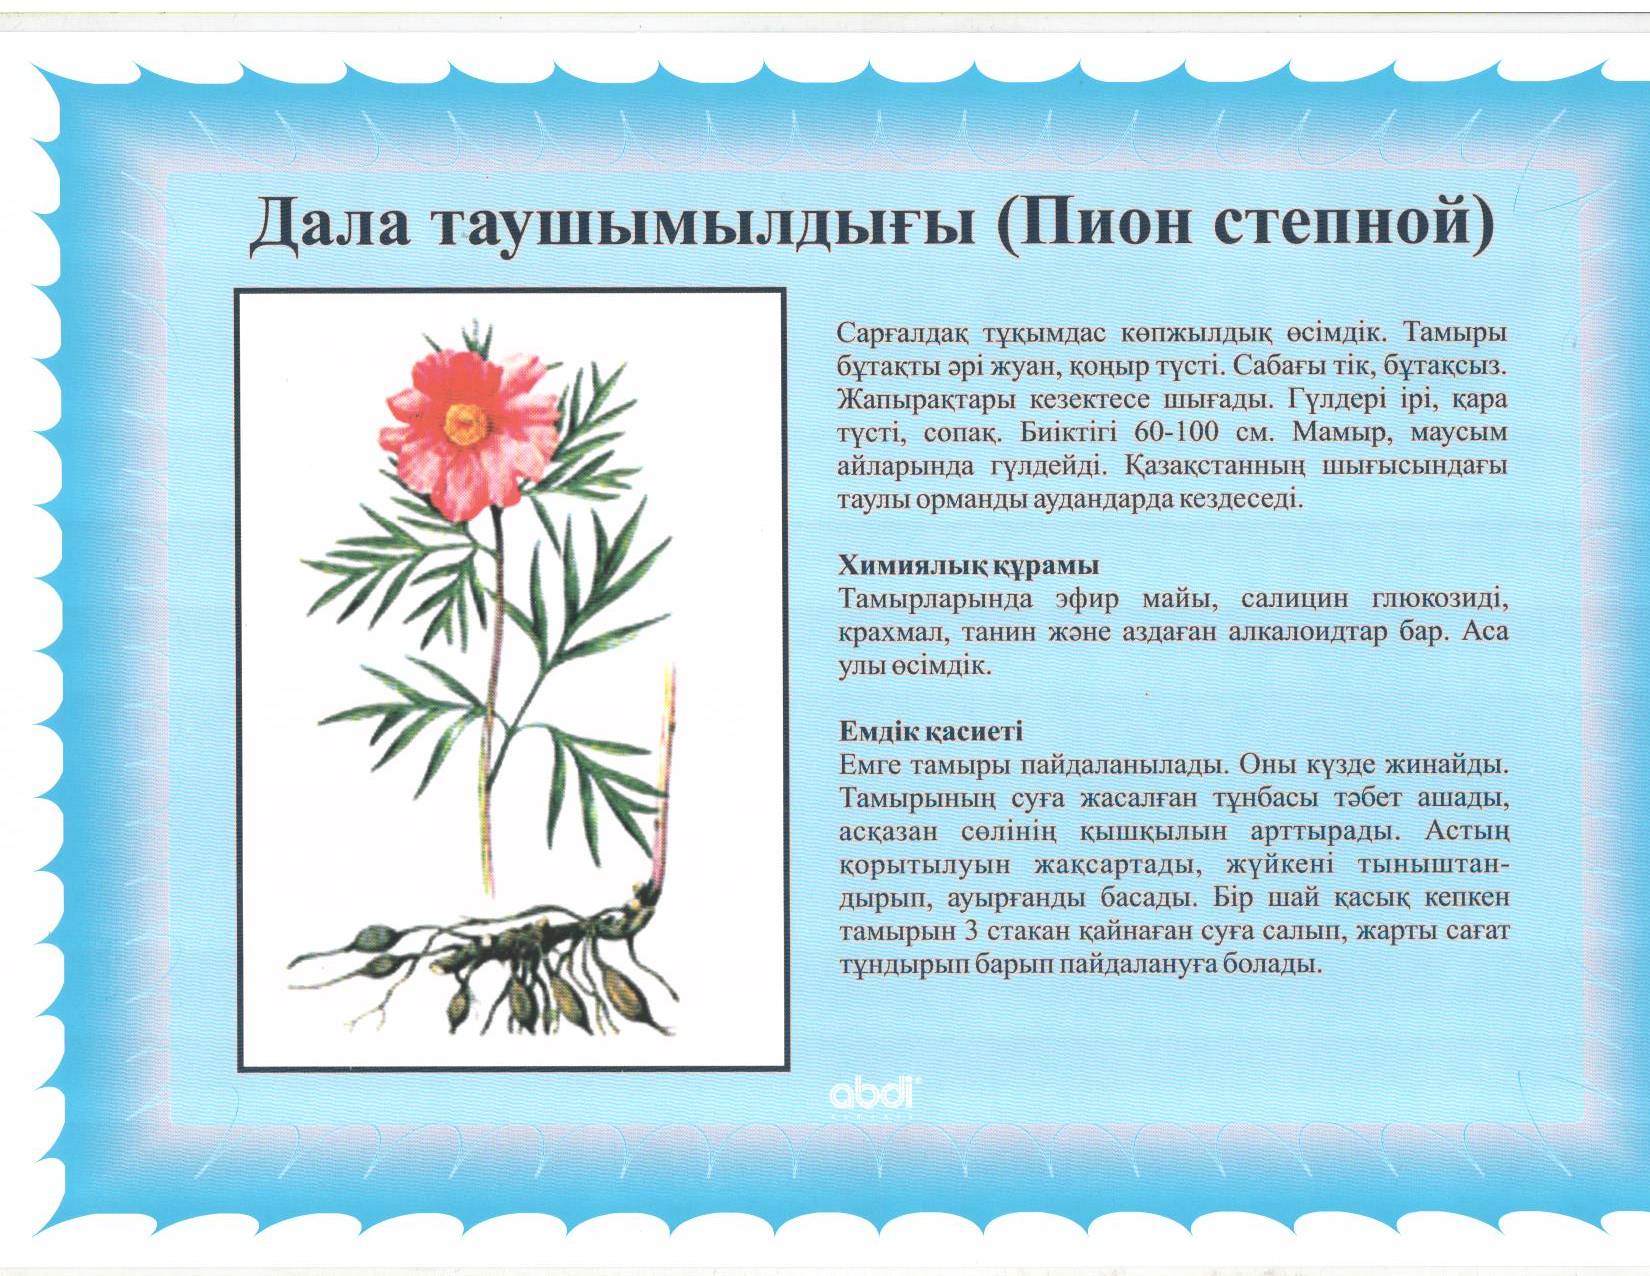 Лекарственные растения Ставропольского края